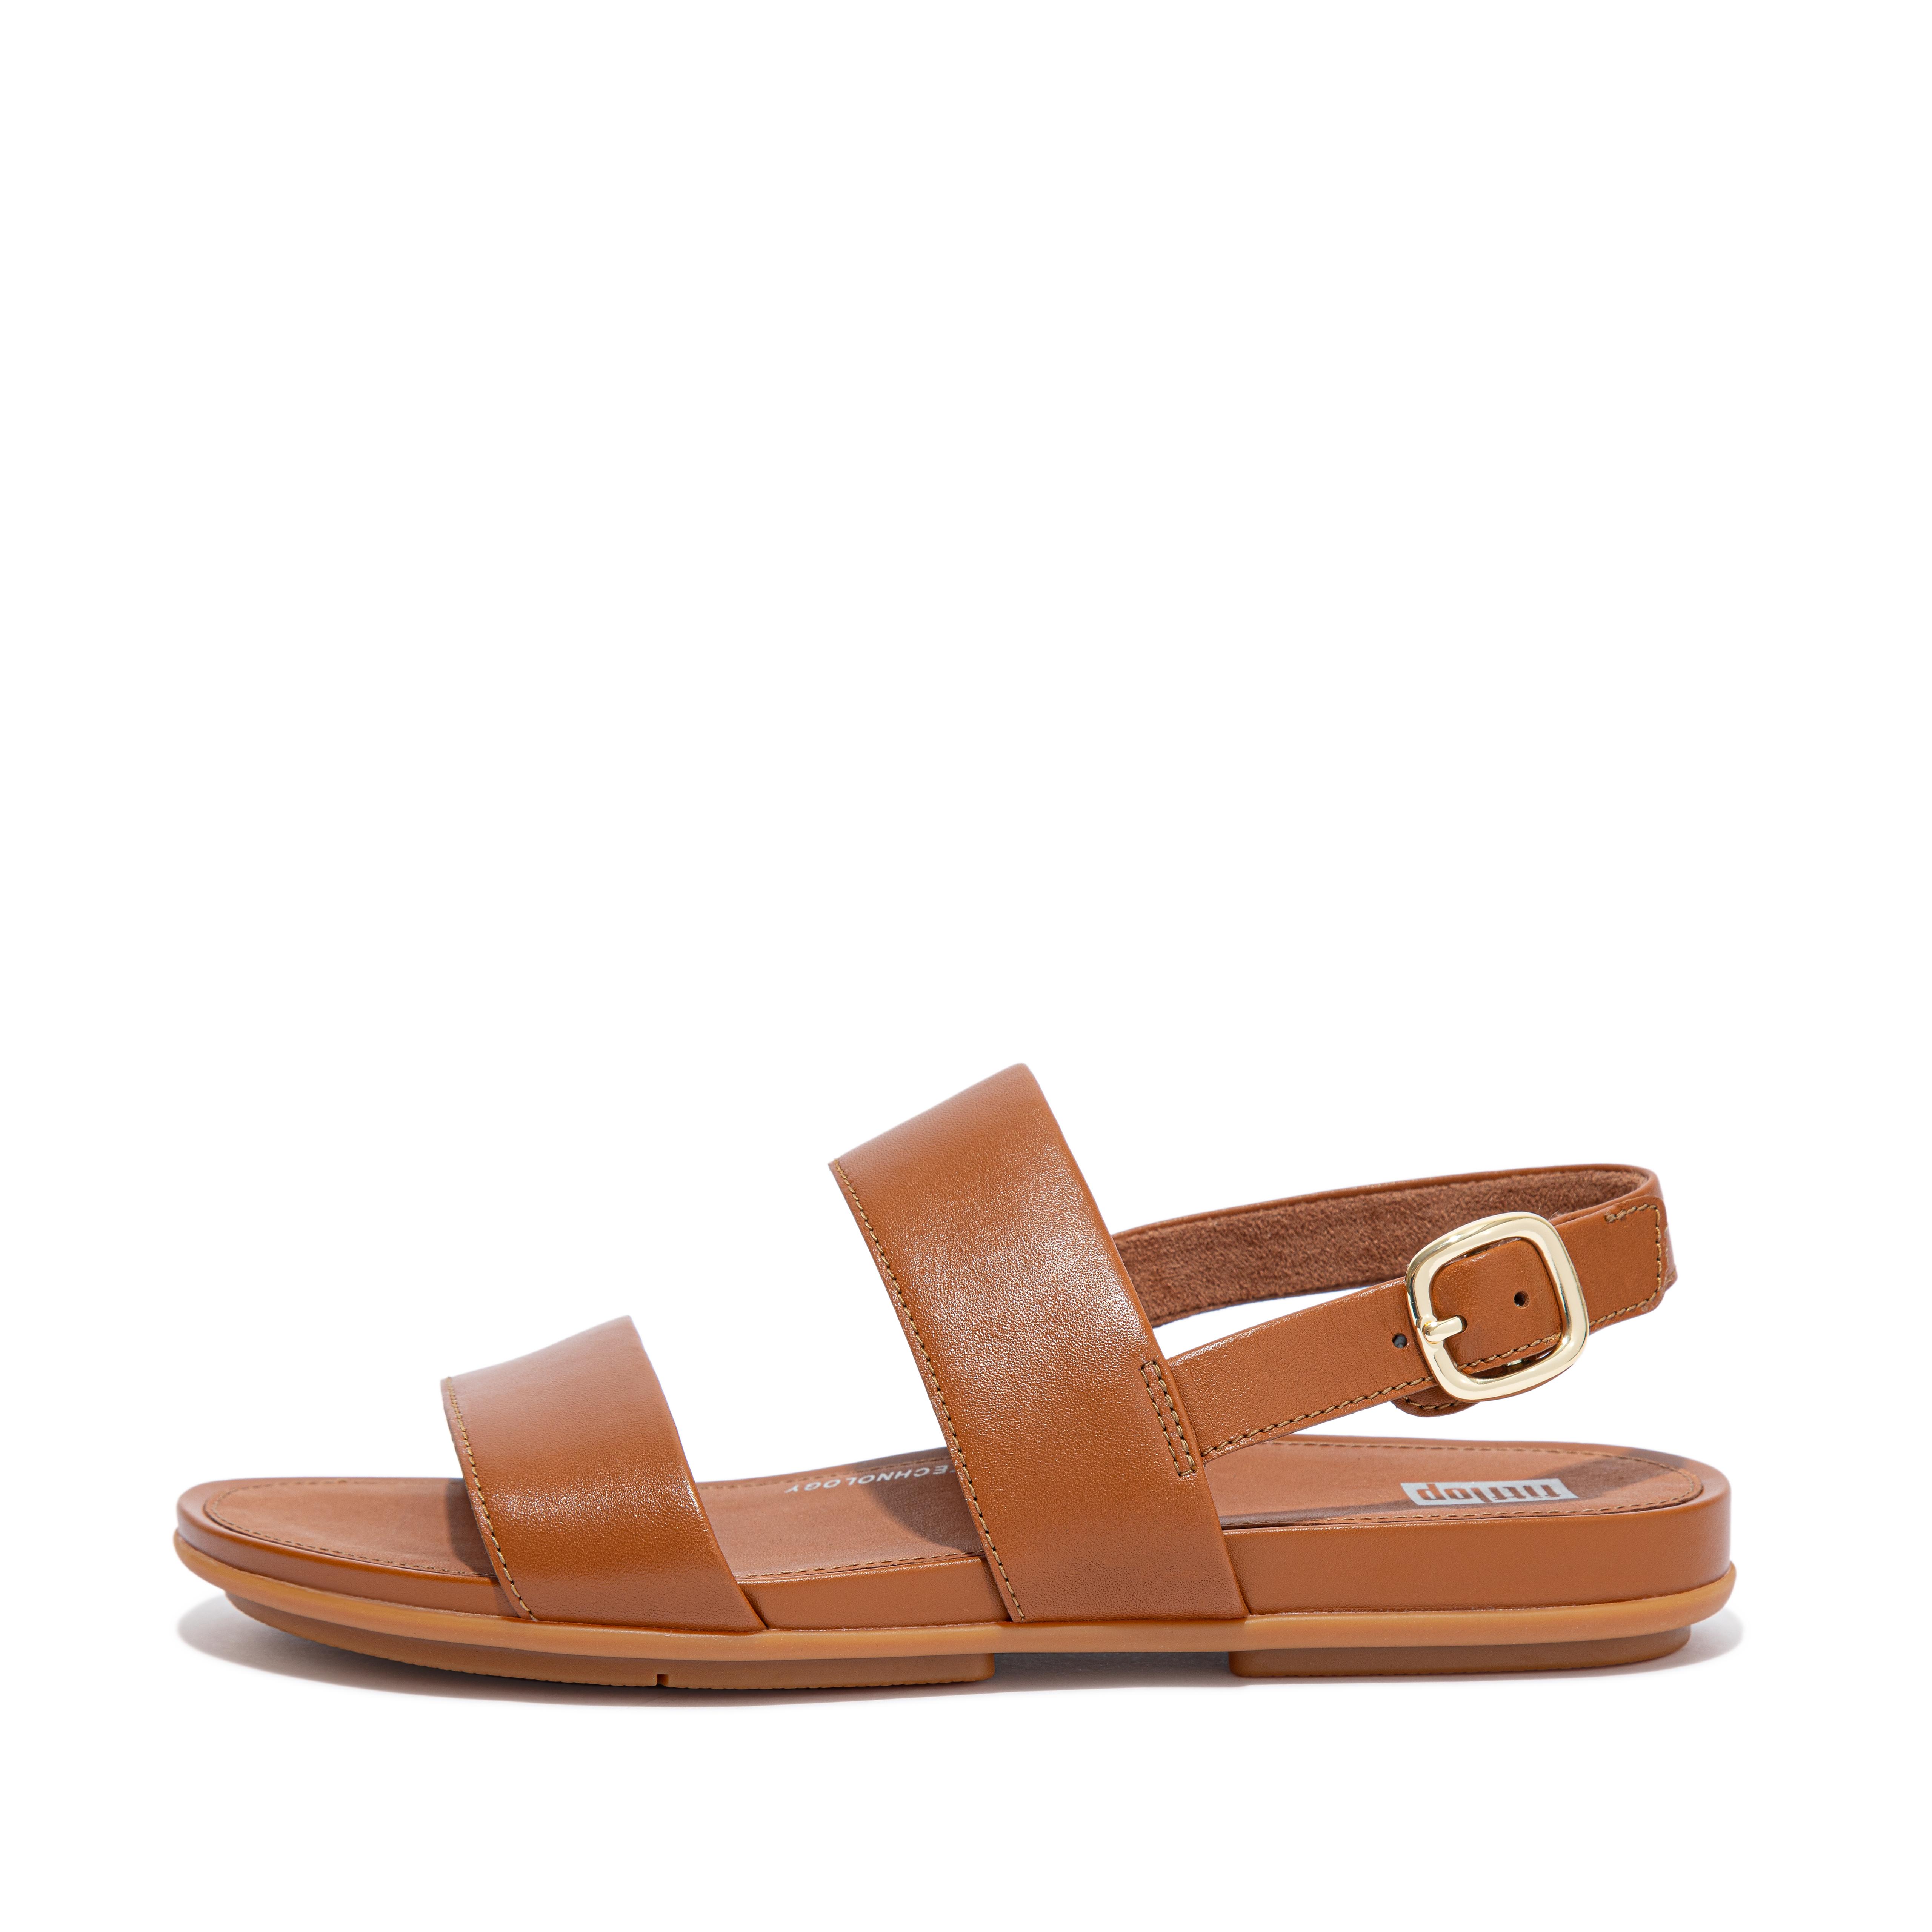 핏플랍 샌들 FitFlop GRACIE Leather Back-Strap Sandals,Light Tan